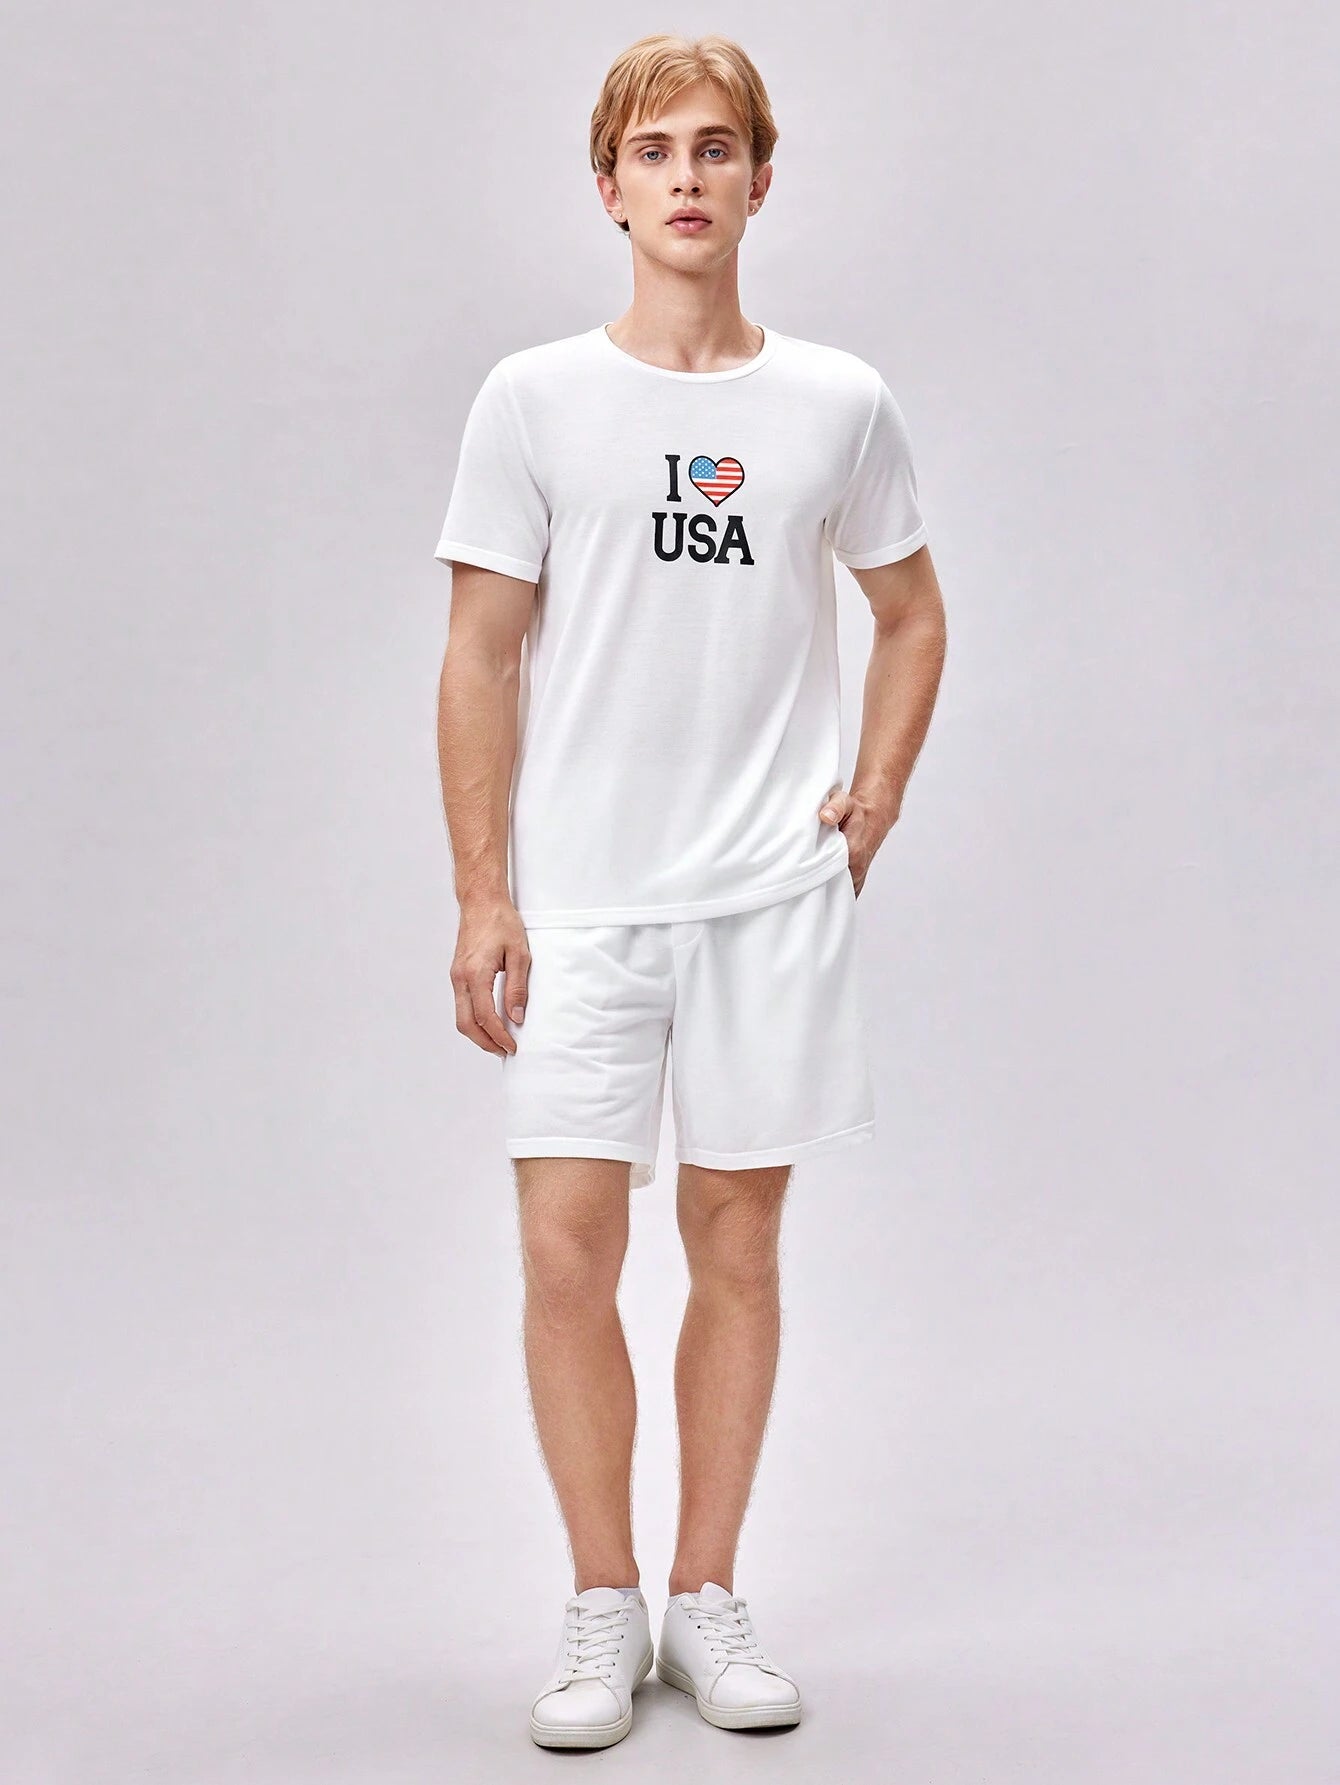 8335 a01-08 Shorts con camiseta con estampado de corazón y slogan